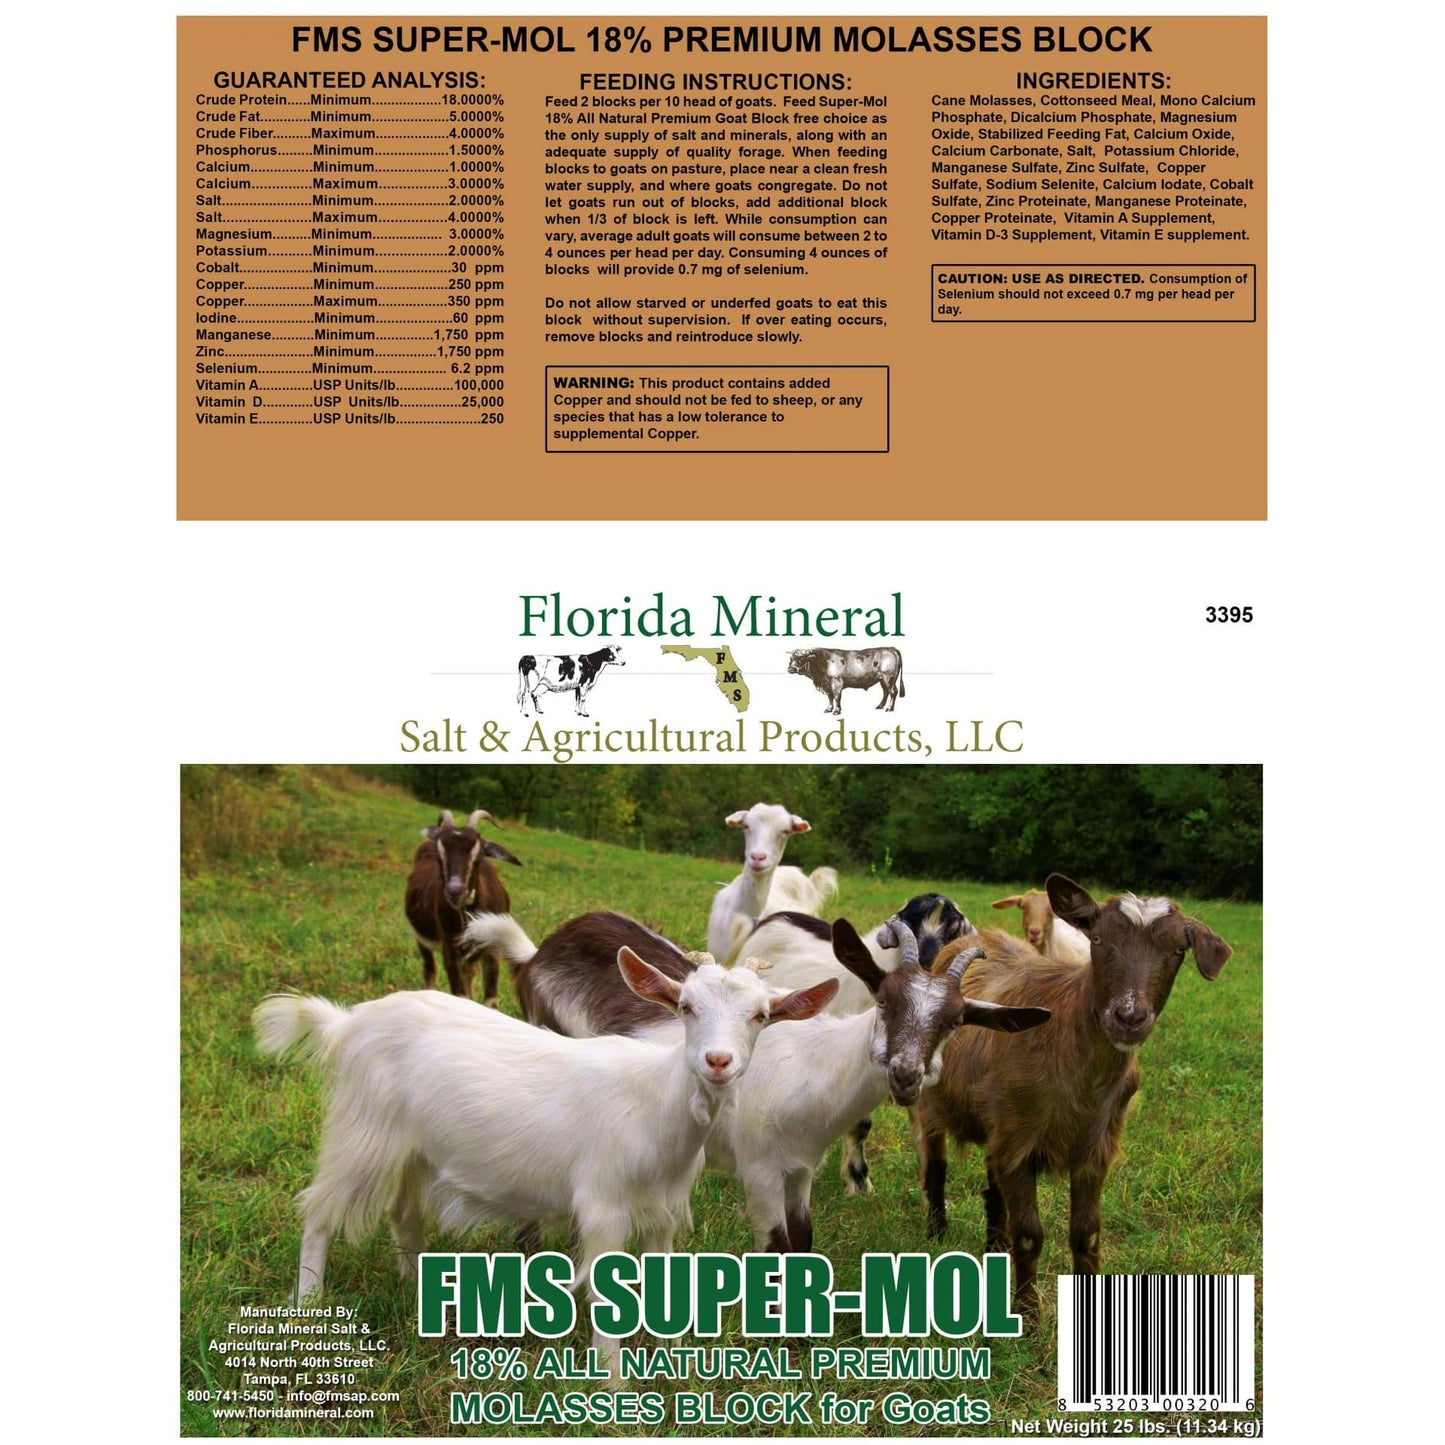 Super-Mol 18% All Natural Premium Molasses for Goats (25lb Block)